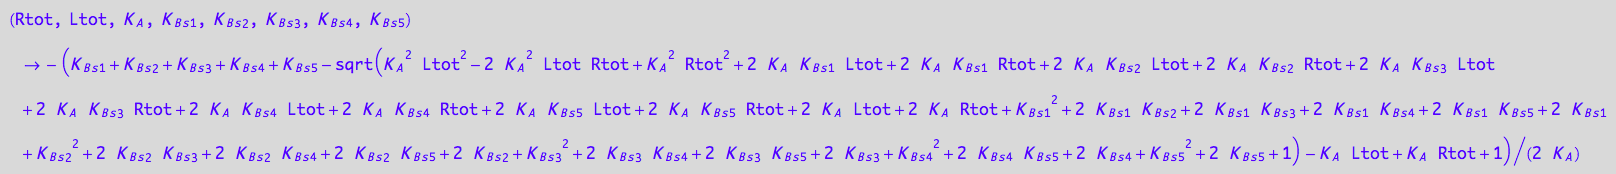 (Rtot, Ltot, K_A, K_B_s_1, K_B_s_2, K_B_s_3, K_B_s_4, K_B_s_5) -> -(K_B_s_1 + K_B_s_2 + K_B_s_3 + K_B_s_4 + K_B_s_5 - (K_A^2*Ltot^2 - 2*K_A^2*Ltot*Rtot + K_A^2*Rtot^2 + 2*K_A*K_B_s_1*Ltot + 2*K_A*K_B_s_1*Rtot + 2*K_A*K_B_s_2*Ltot + 2*K_A*K_B_s_2*Rtot + 2*K_A*K_B_s_3*Ltot + 2*K_A*K_B_s_3*Rtot + 2*K_A*K_B_s_4*Ltot + 2*K_A*K_B_s_4*Rtot + 2*K_A*K_B_s_5*Ltot + 2*K_A*K_B_s_5*Rtot + 2*K_A*Ltot + 2*K_A*Rtot + K_B_s_1^2 + 2*K_B_s_1*K_B_s_2 + 2*K_B_s_1*K_B_s_3 + 2*K_B_s_1*K_B_s_4 + 2*K_B_s_1*K_B_s_5 + 2*K_B_s_1 + K_B_s_2^2 + 2*K_B_s_2*K_B_s_3 + 2*K_B_s_2*K_B_s_4 + 2*K_B_s_2*K_B_s_5 + 2*K_B_s_2 + K_B_s_3^2 + 2*K_B_s_3*K_B_s_4 + 2*K_B_s_3*K_B_s_5 + 2*K_B_s_3 + K_B_s_4^2 + 2*K_B_s_4*K_B_s_5 + 2*K_B_s_4 + K_B_s_5^2 + 2*K_B_s_5 + 1)^(1/2) - K_A*Ltot + K_A*Rtot + 1)/(2*K_A)